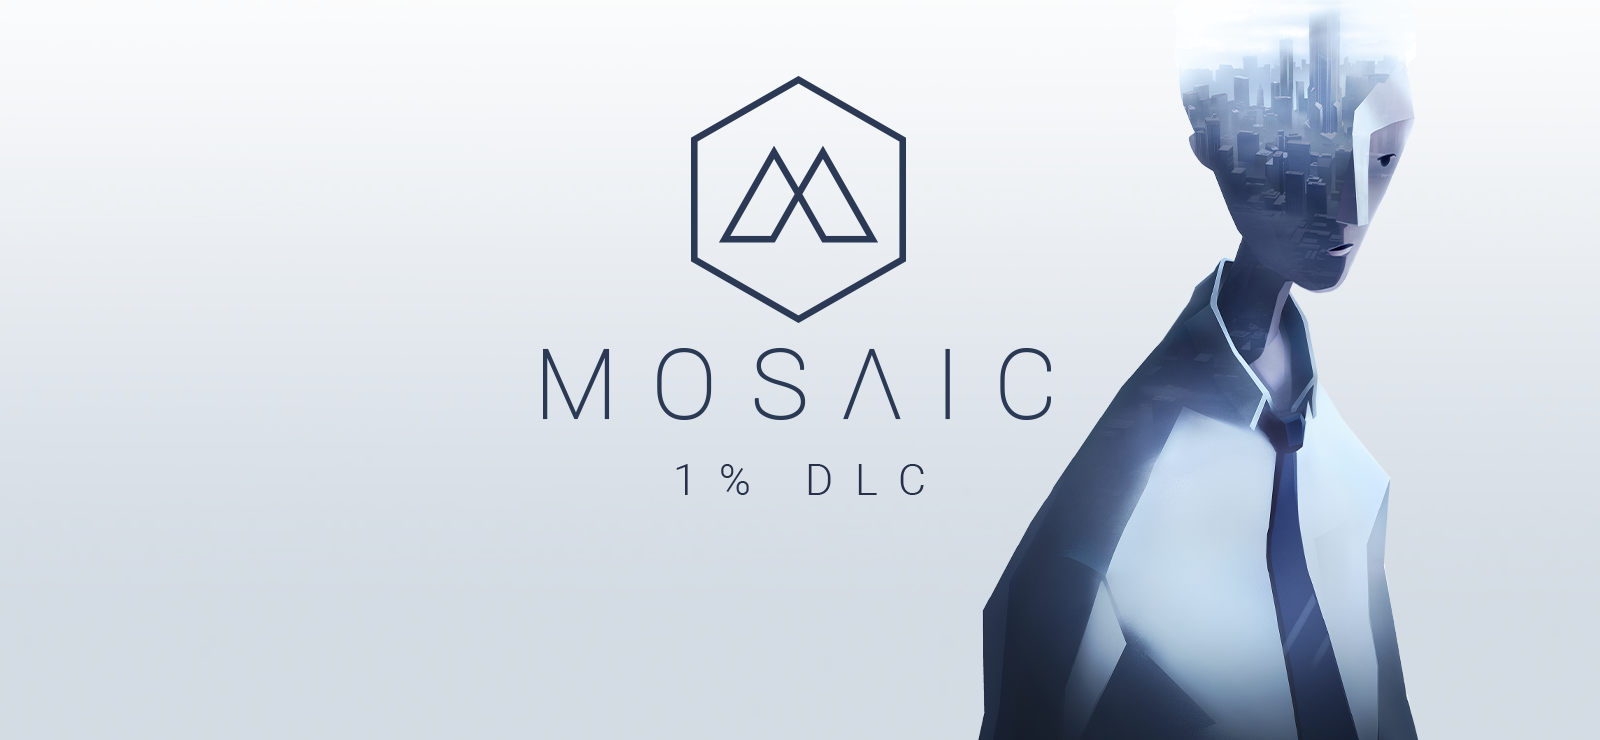 Mosaic 1% DLC